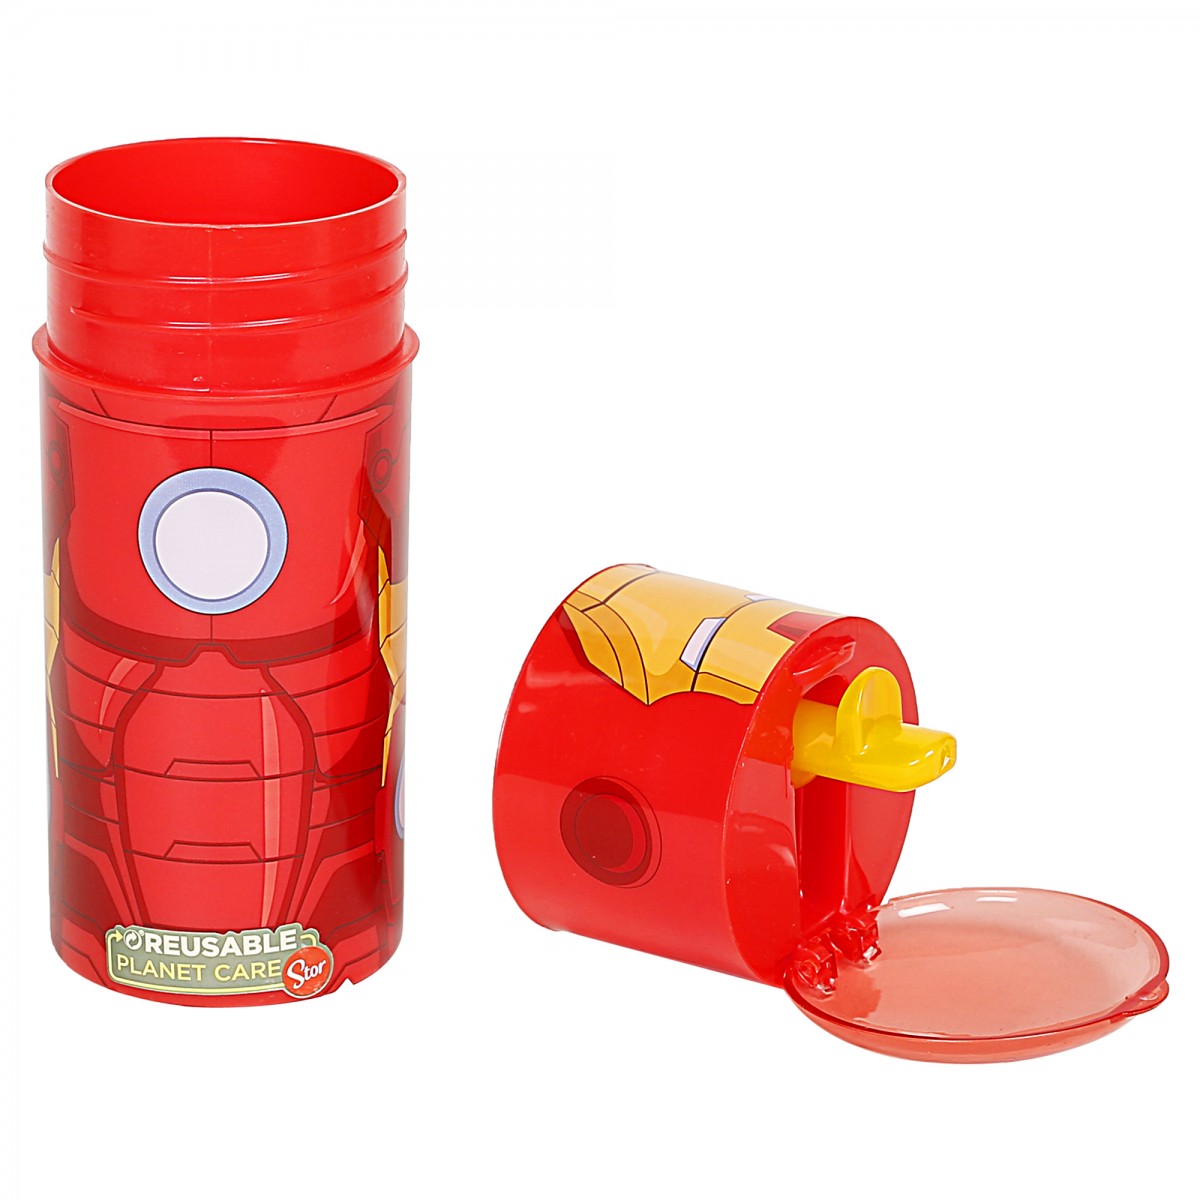 Avengers Iron Man Water Bottle for Kids, Multicolour, 350ml